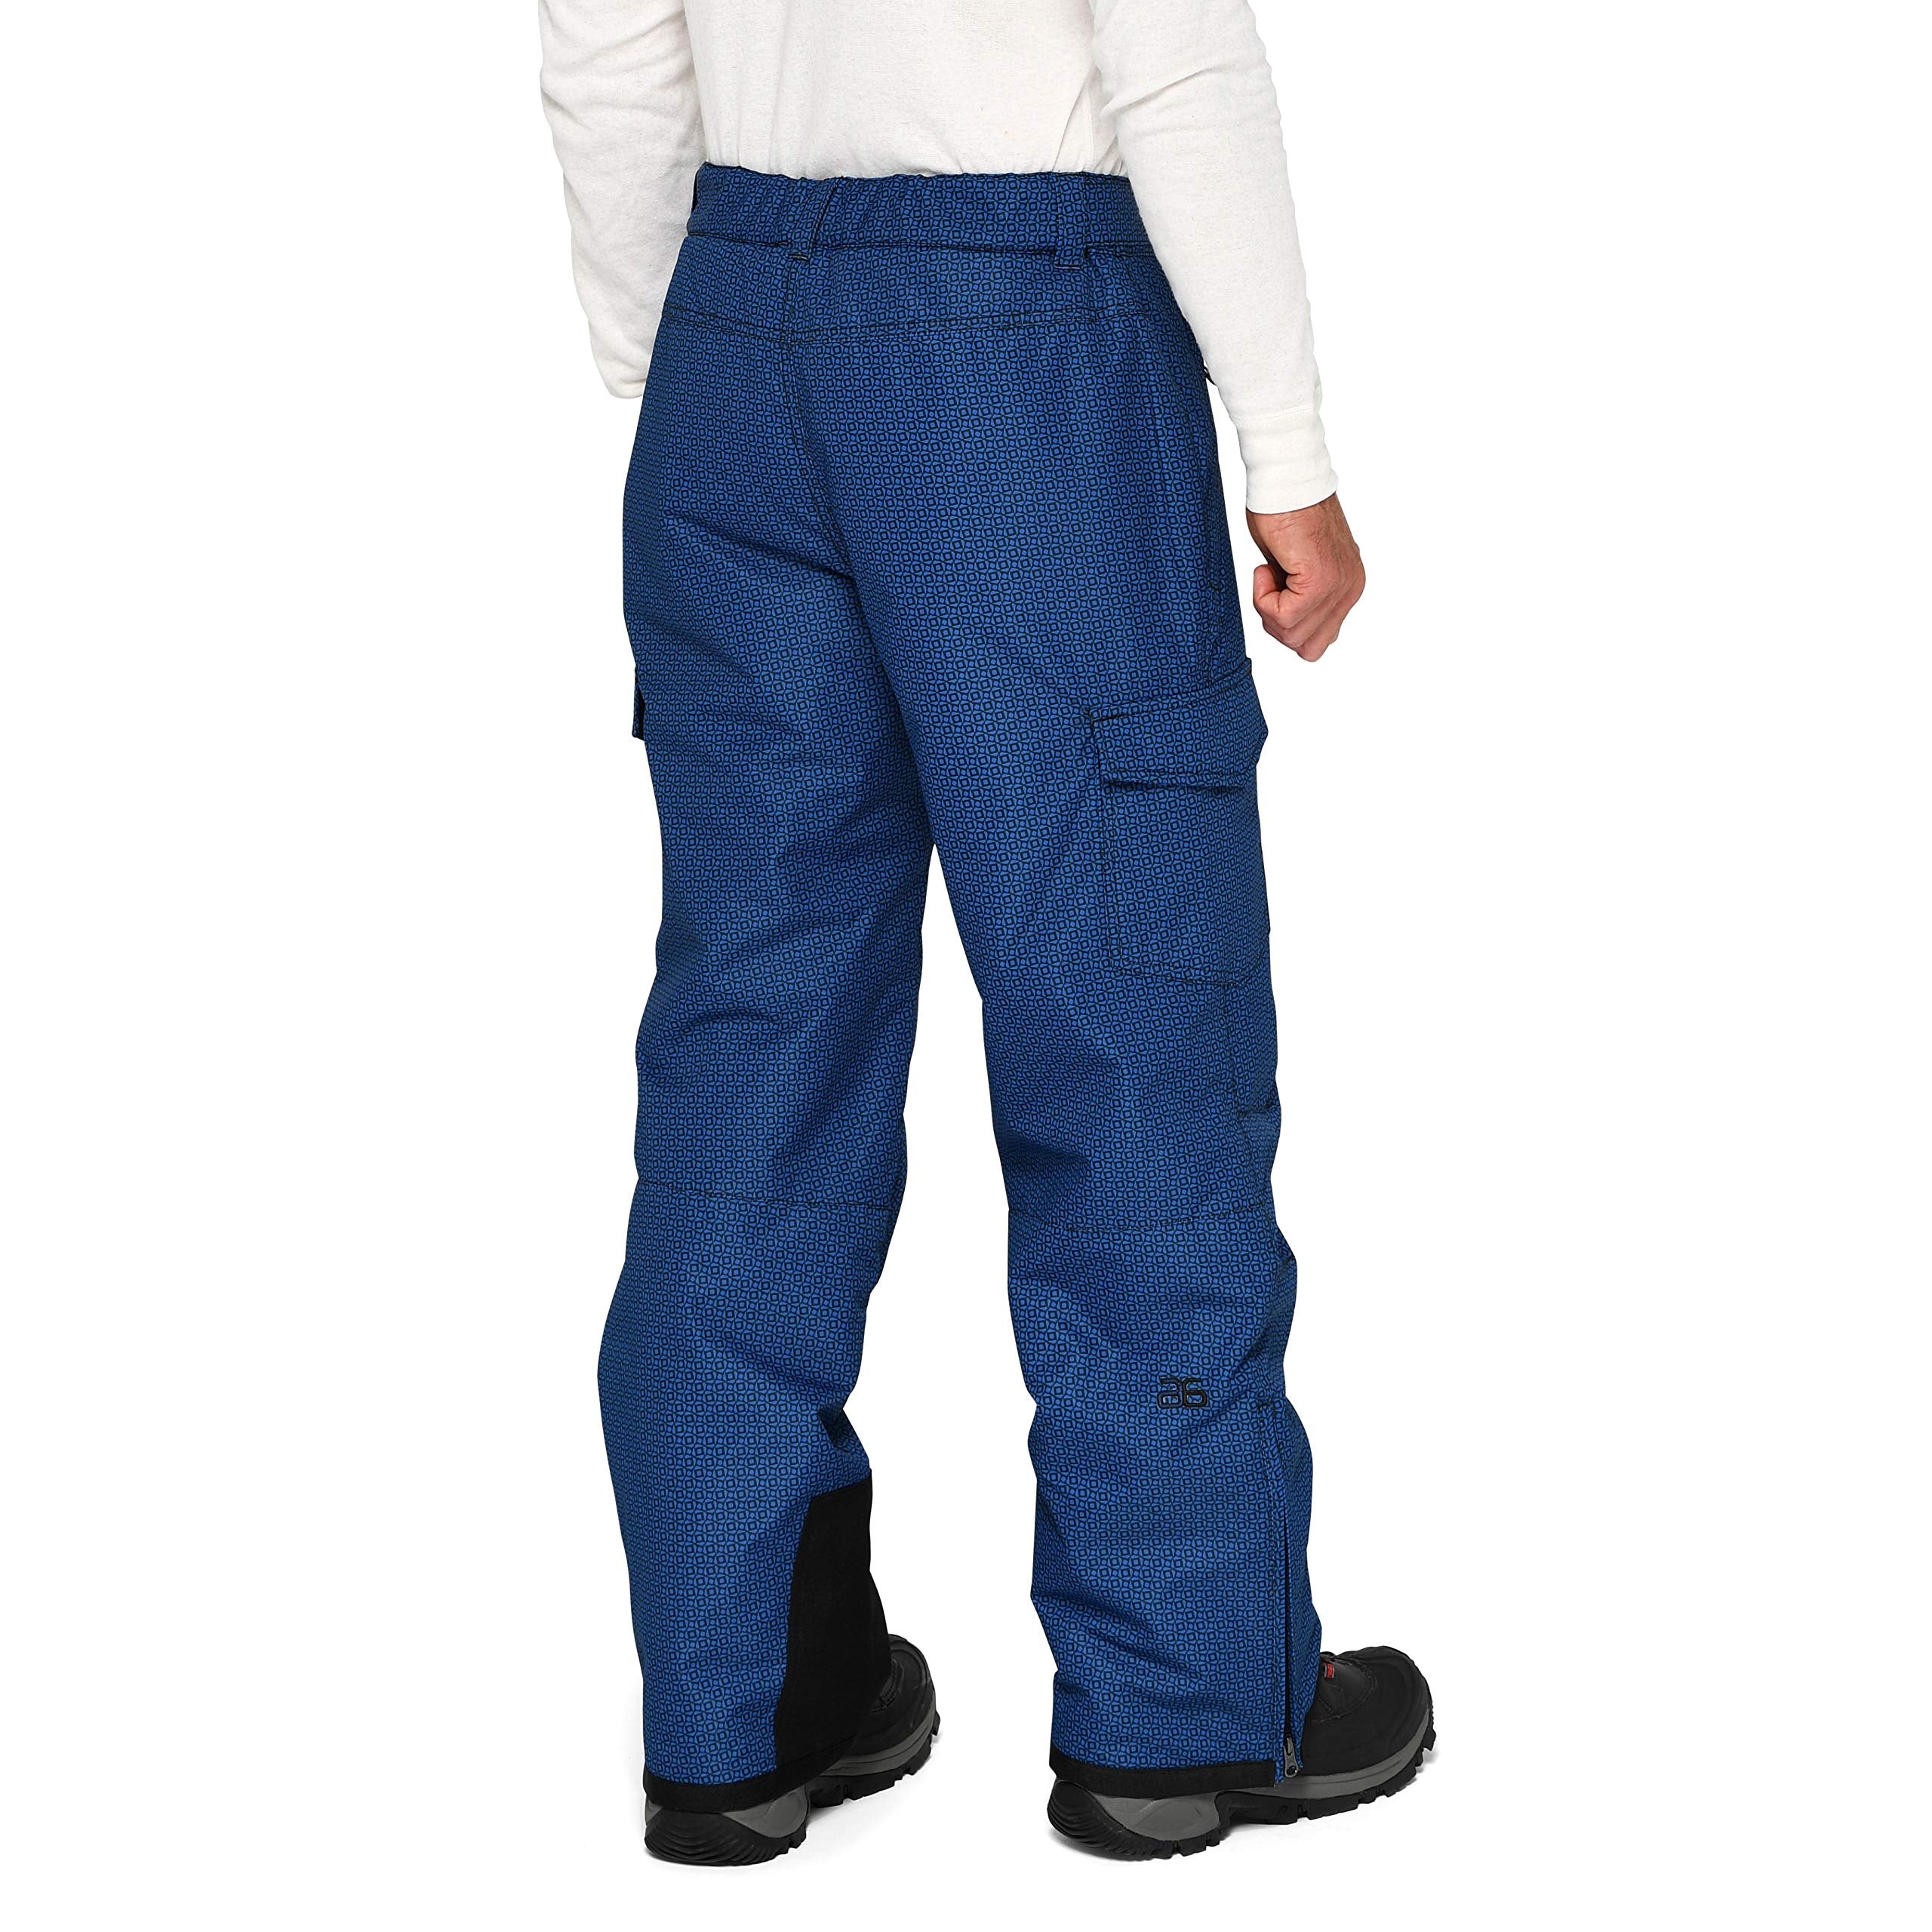 Arctix Men's Essential Snow Pants 32 - Black/Charcoal / Medium/30 Inseam